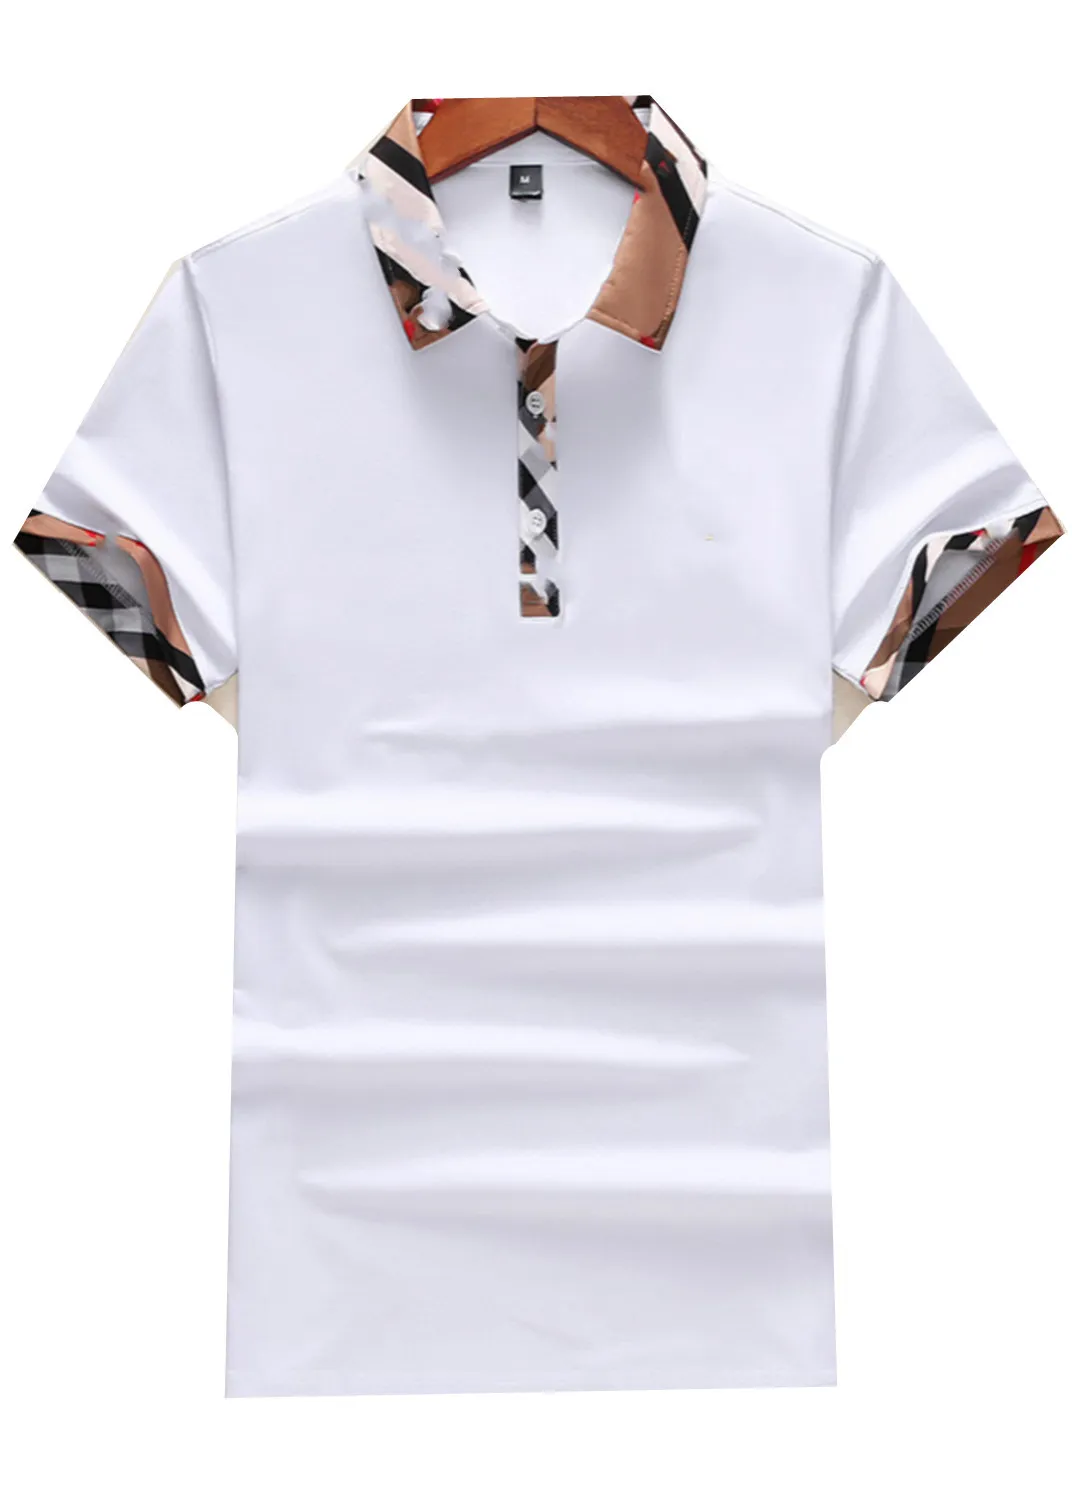 2022 رجل بولو مطبوع قميص الكرتون 100٪٪ قصيرة الأكمام camisas الوقوف طوق الذكور القمصان M-3XL # 24